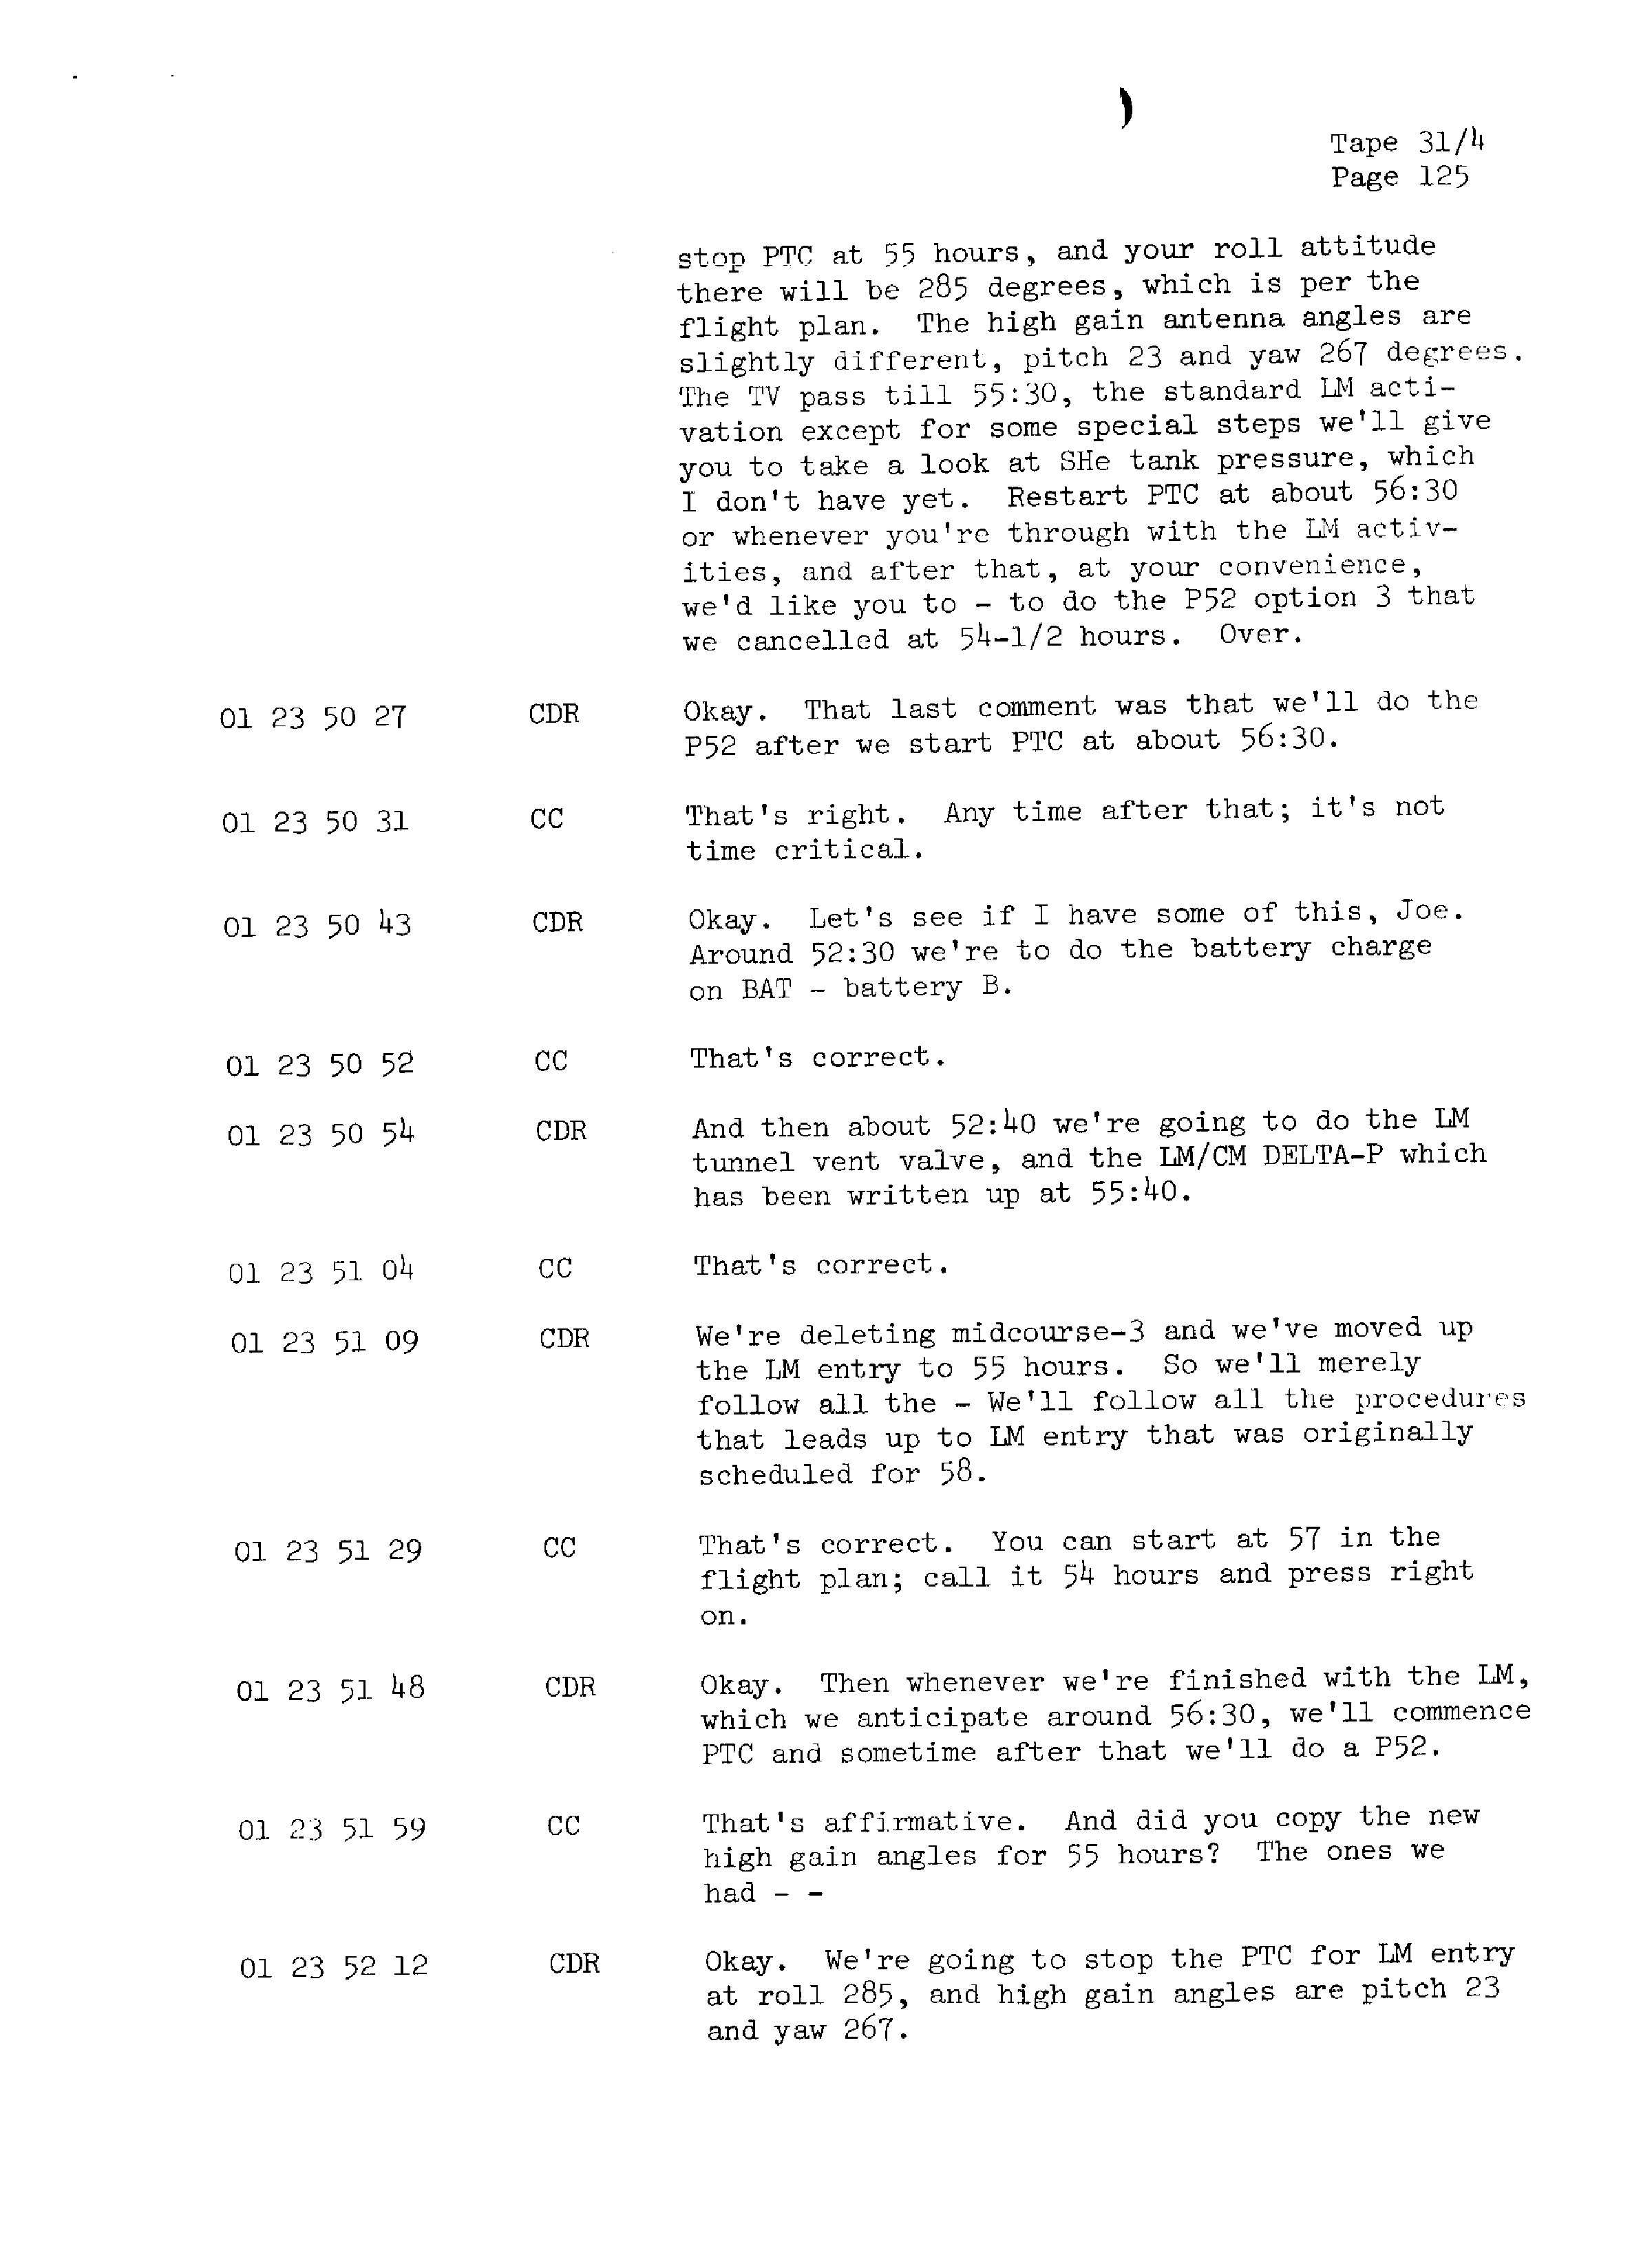 Page 132 of Apollo 13’s original transcript